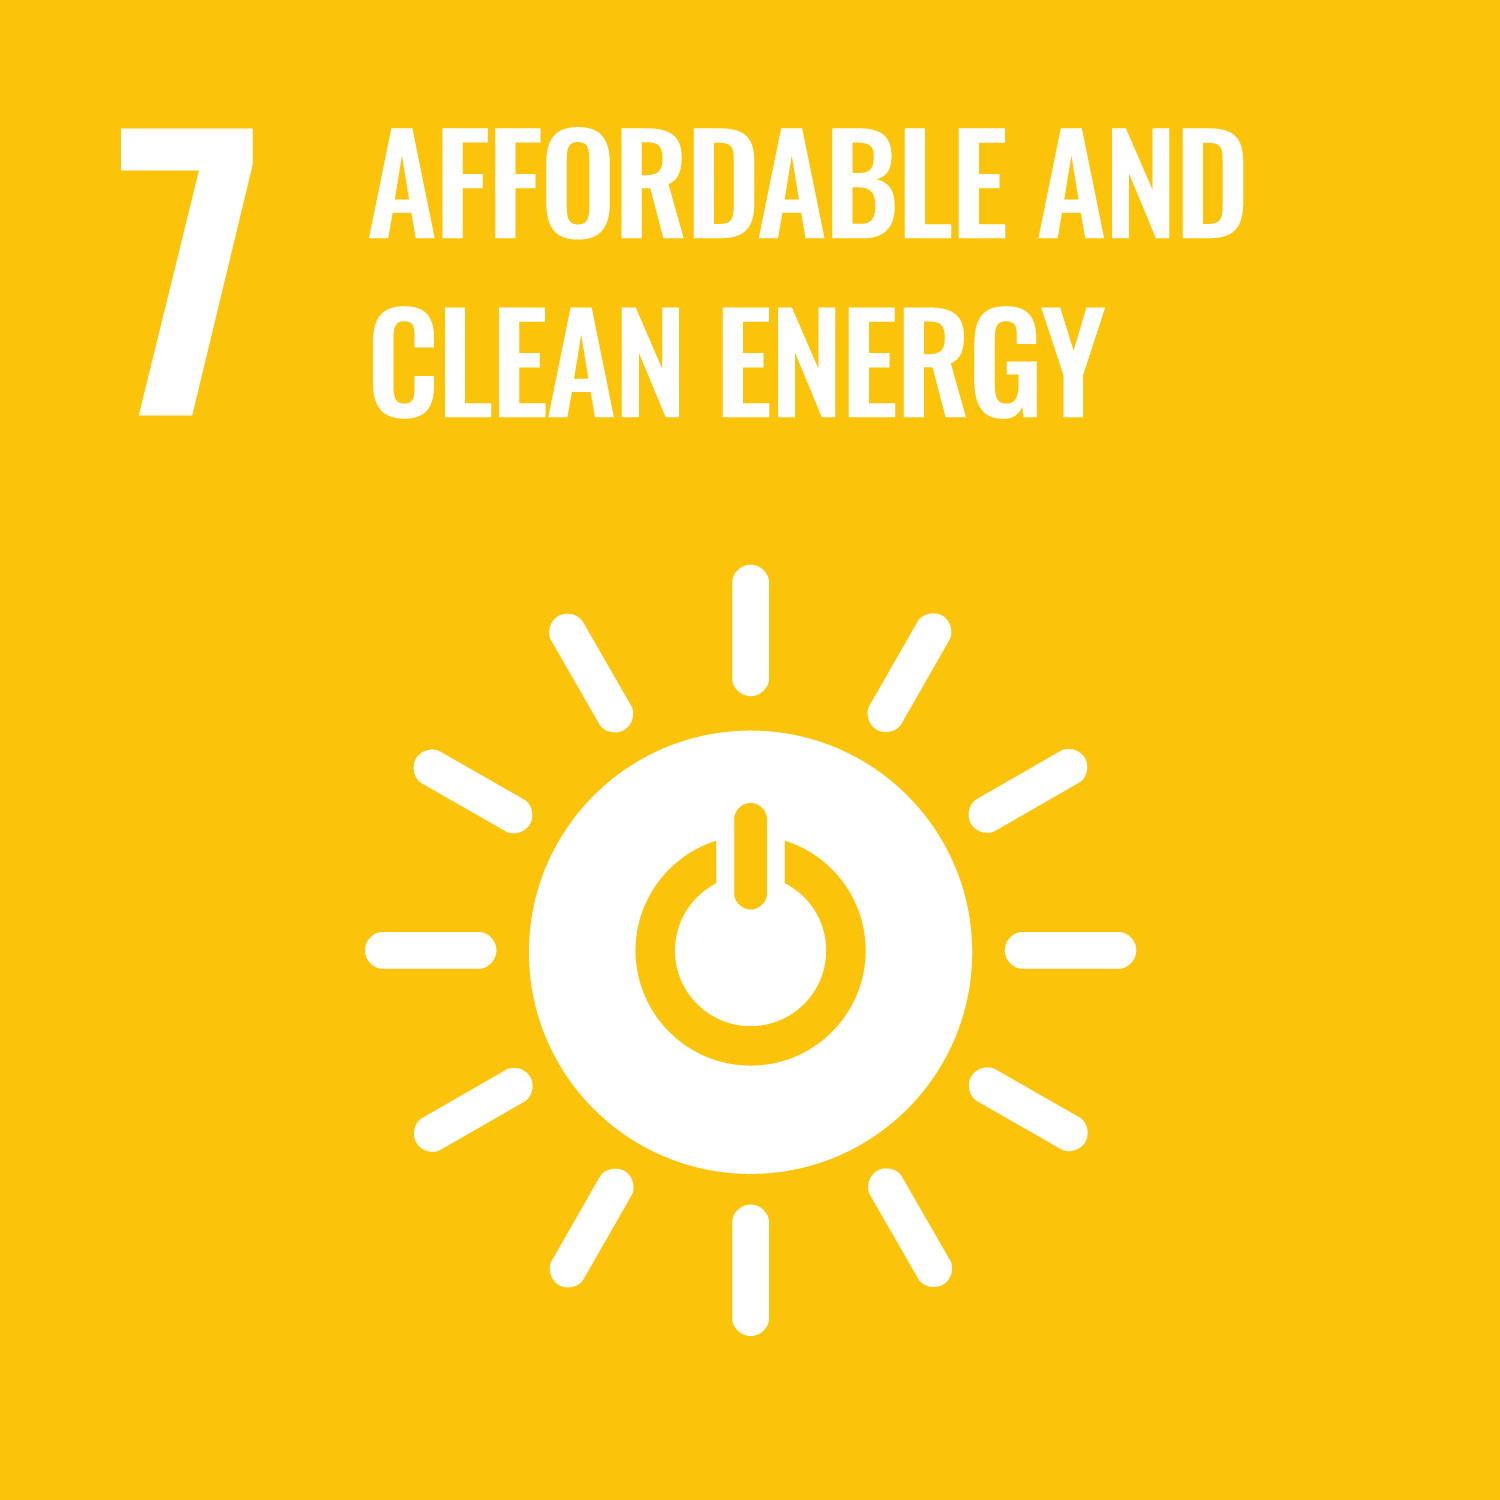 Nachhaltige und moderne Energie für alle – Zugang zu bezahlbarer, verlässlicher, nachhaltiger und zeitgemäßer Energie für alle sichern.